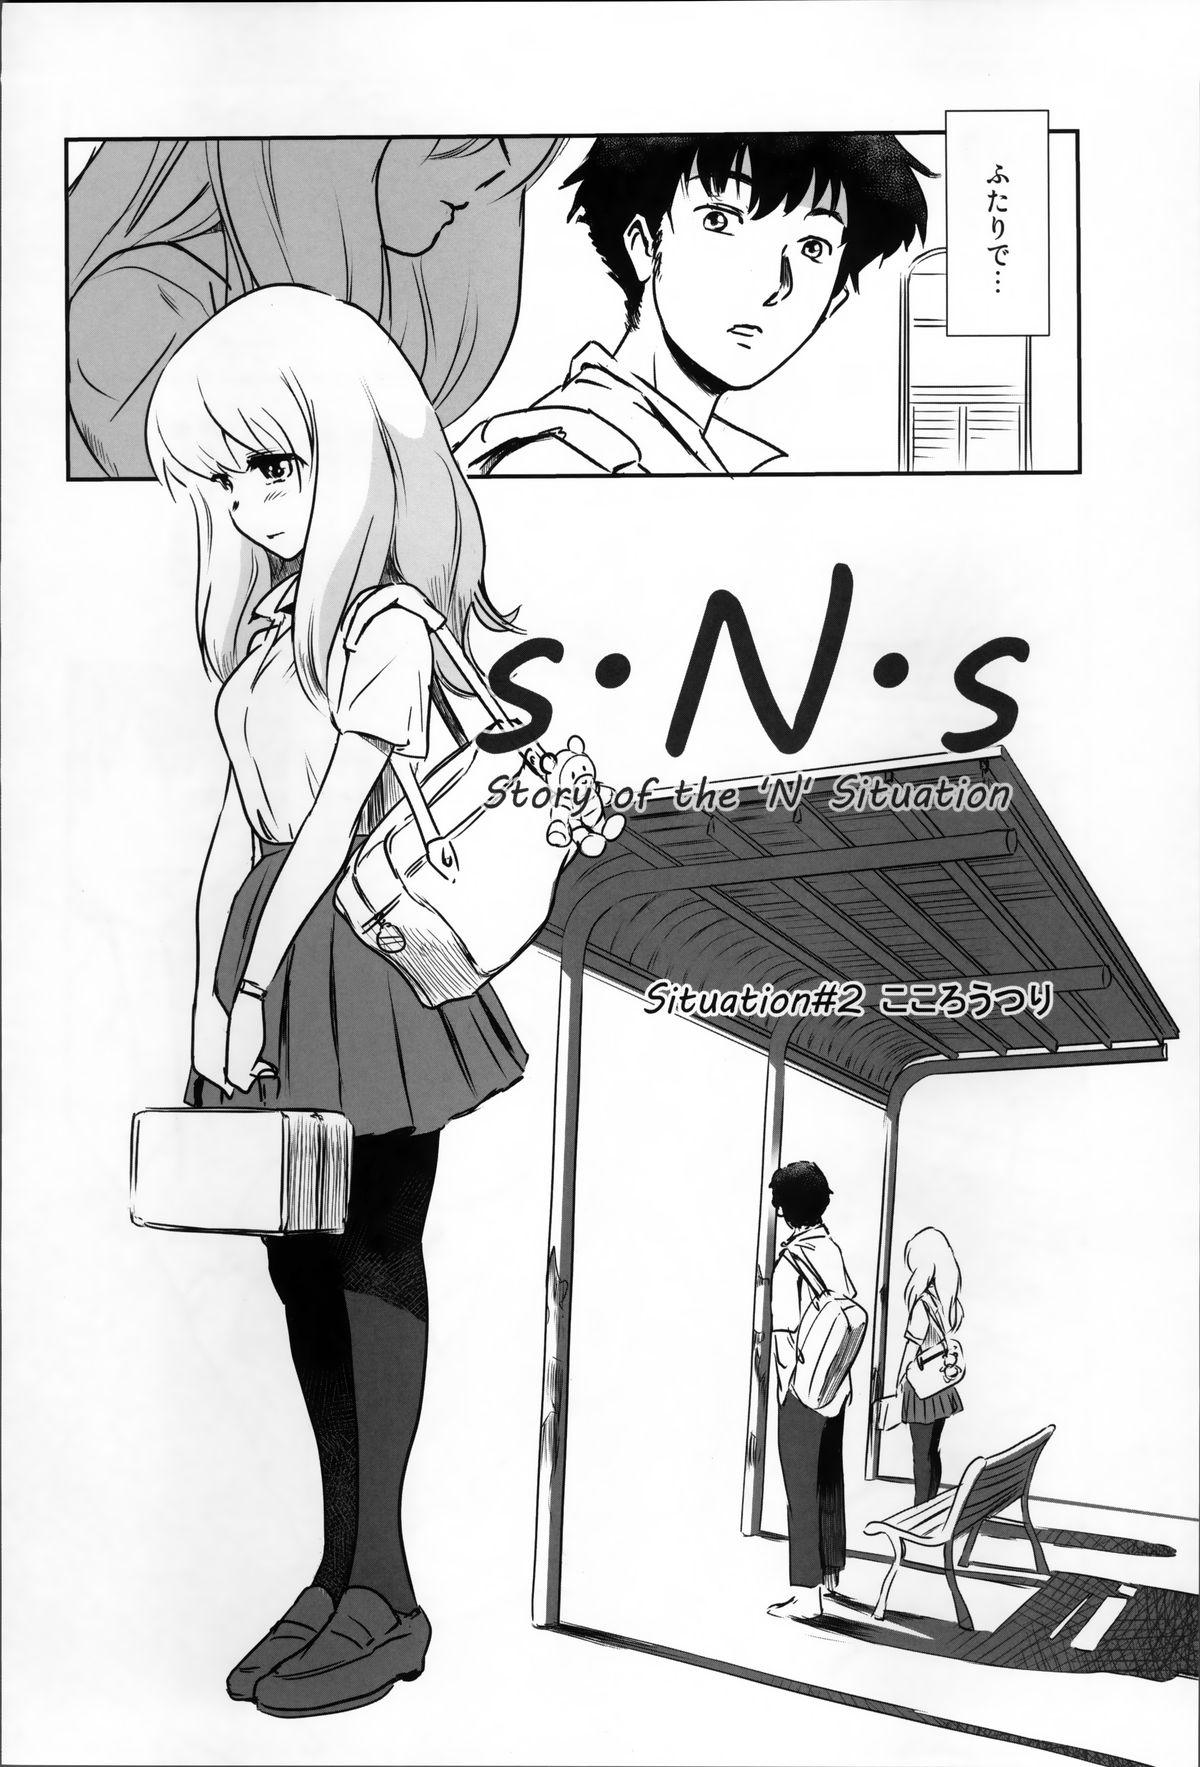 Tetas Grandes Story of the 'N' Situation - Situation#2 Kokoro Utsuri Gag - Page 4